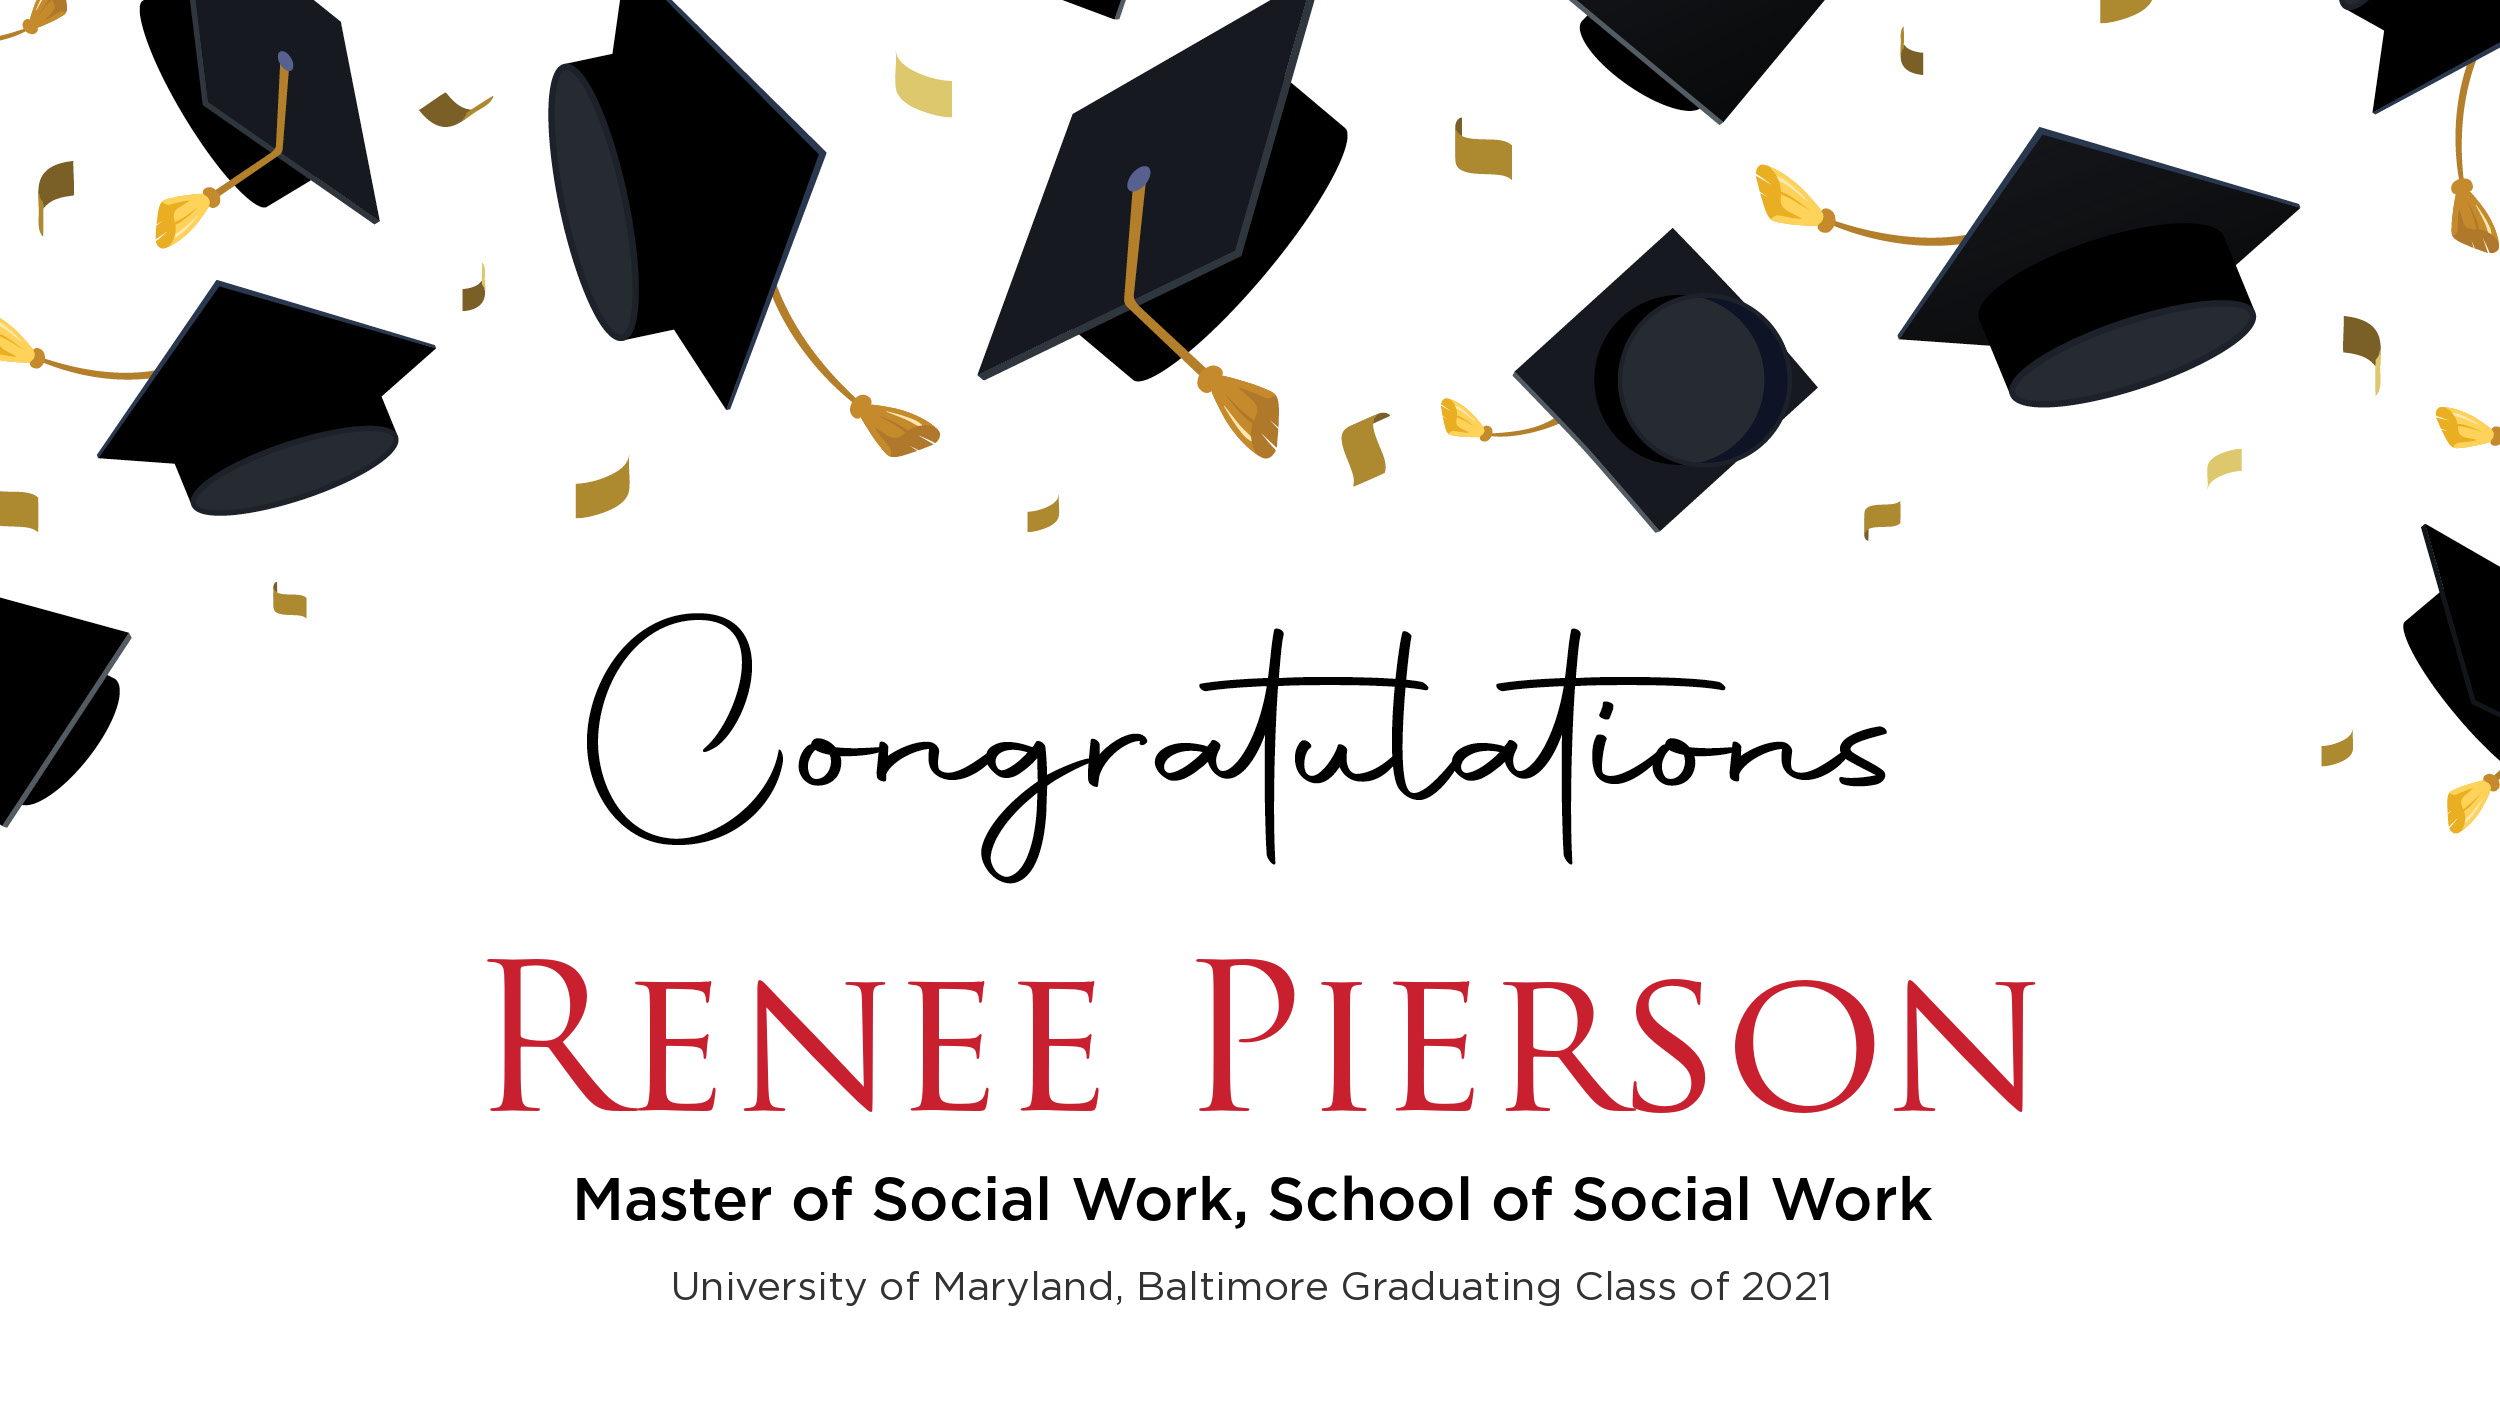 Congratulations Renee Pierson, Master of Social Work